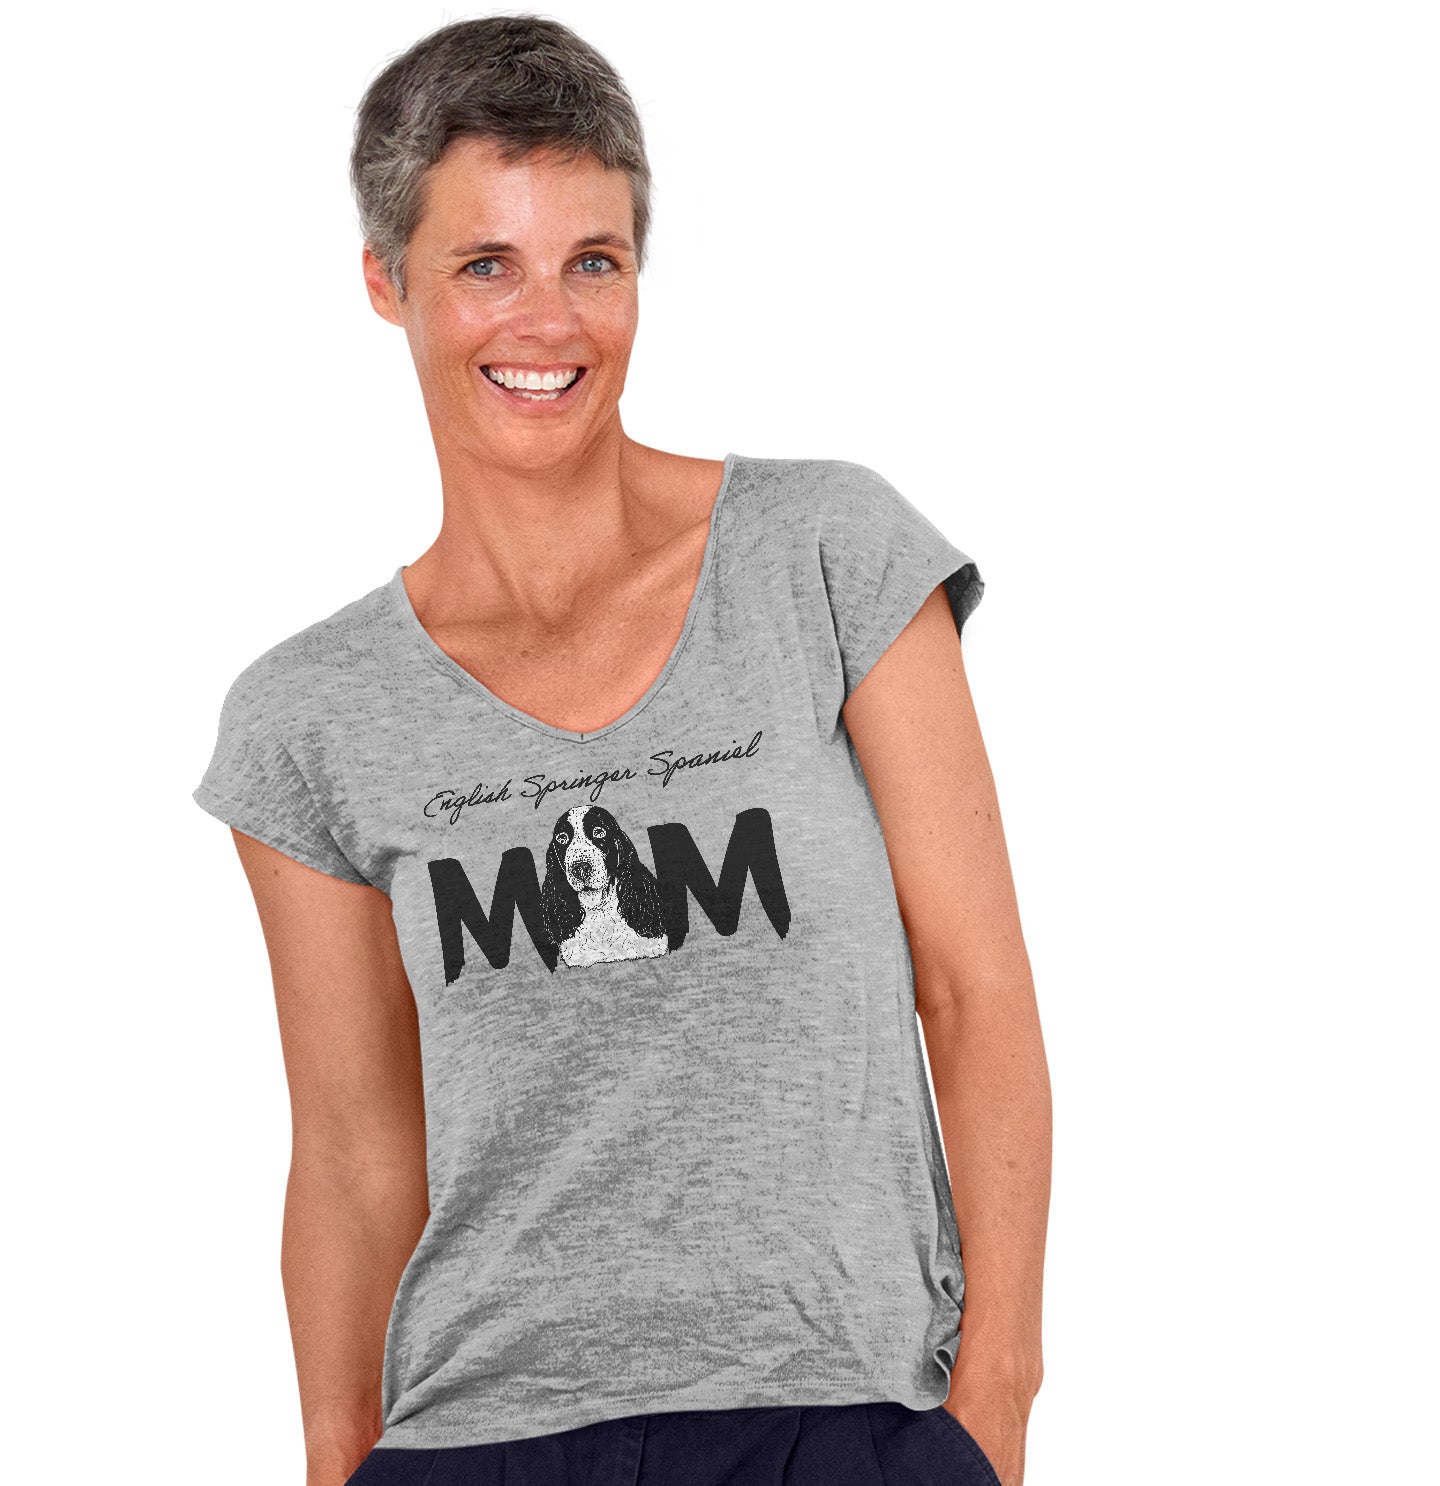 English Springer Spaniel Breed Mom - Women's V-Neck T-Shirt